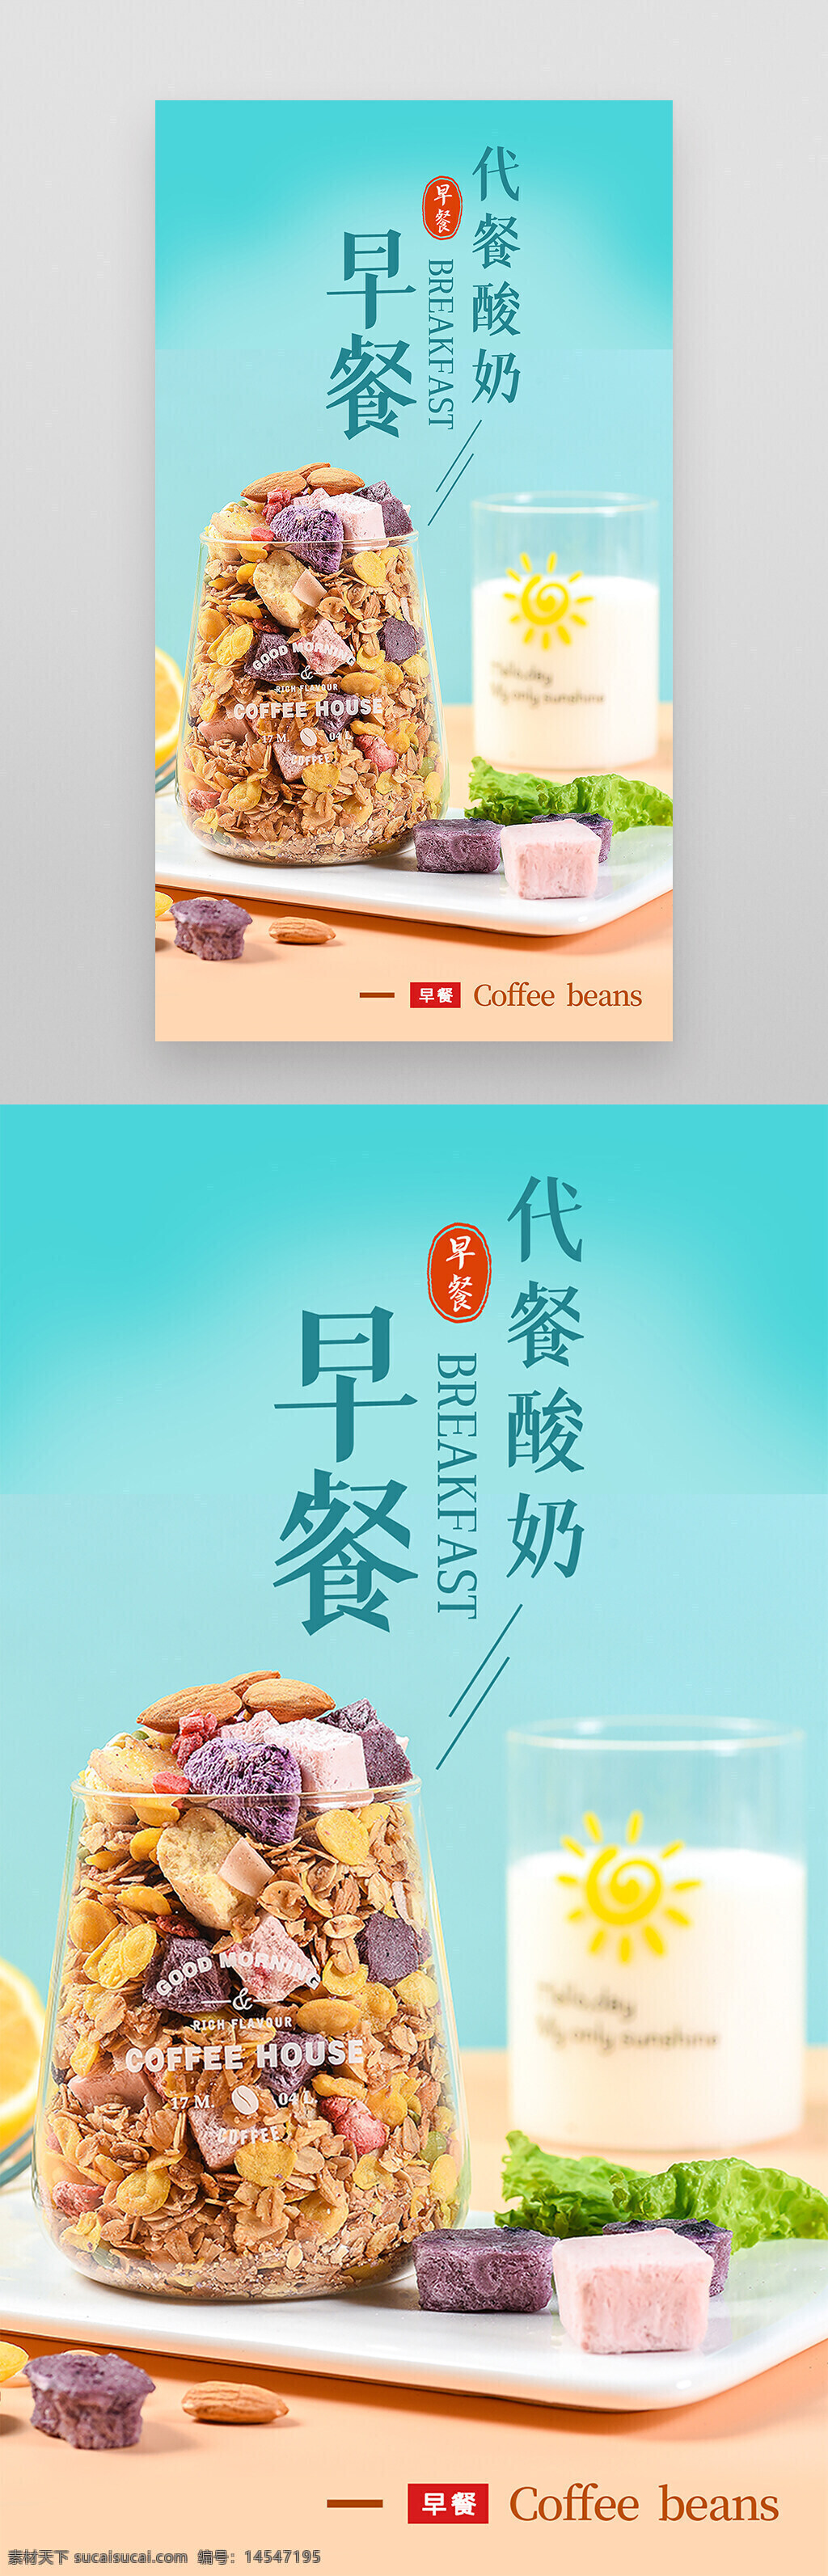 燕麦 五谷 代餐 酸奶块 早餐 摄影 海报